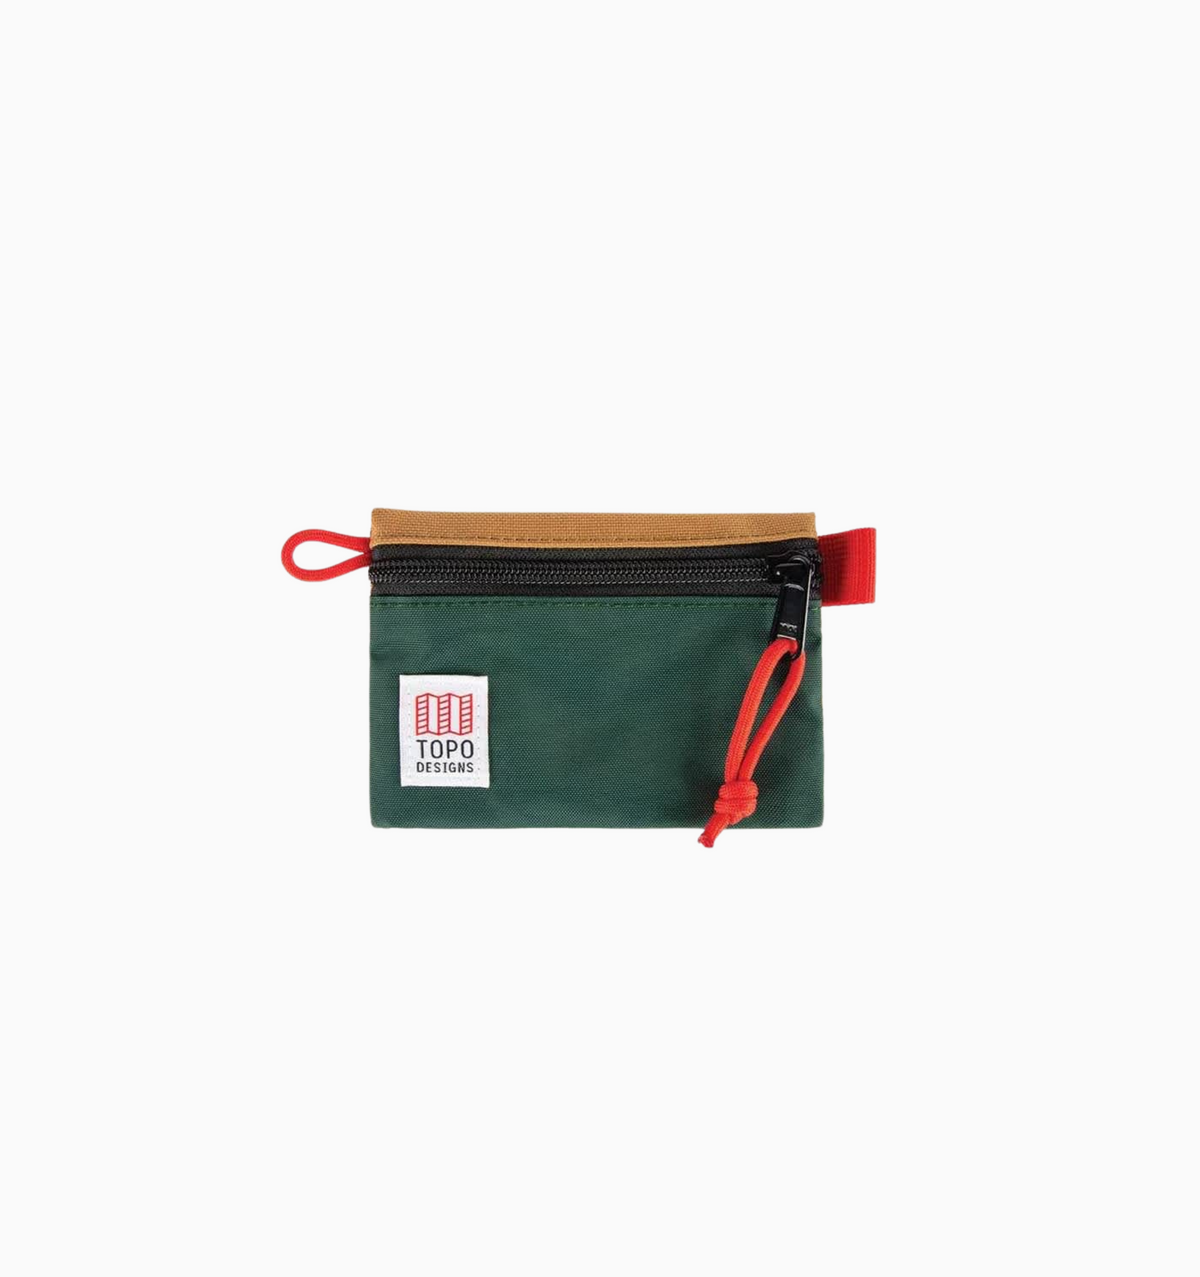 Topo Designs Micro Accessory Bag - Forest Khaki